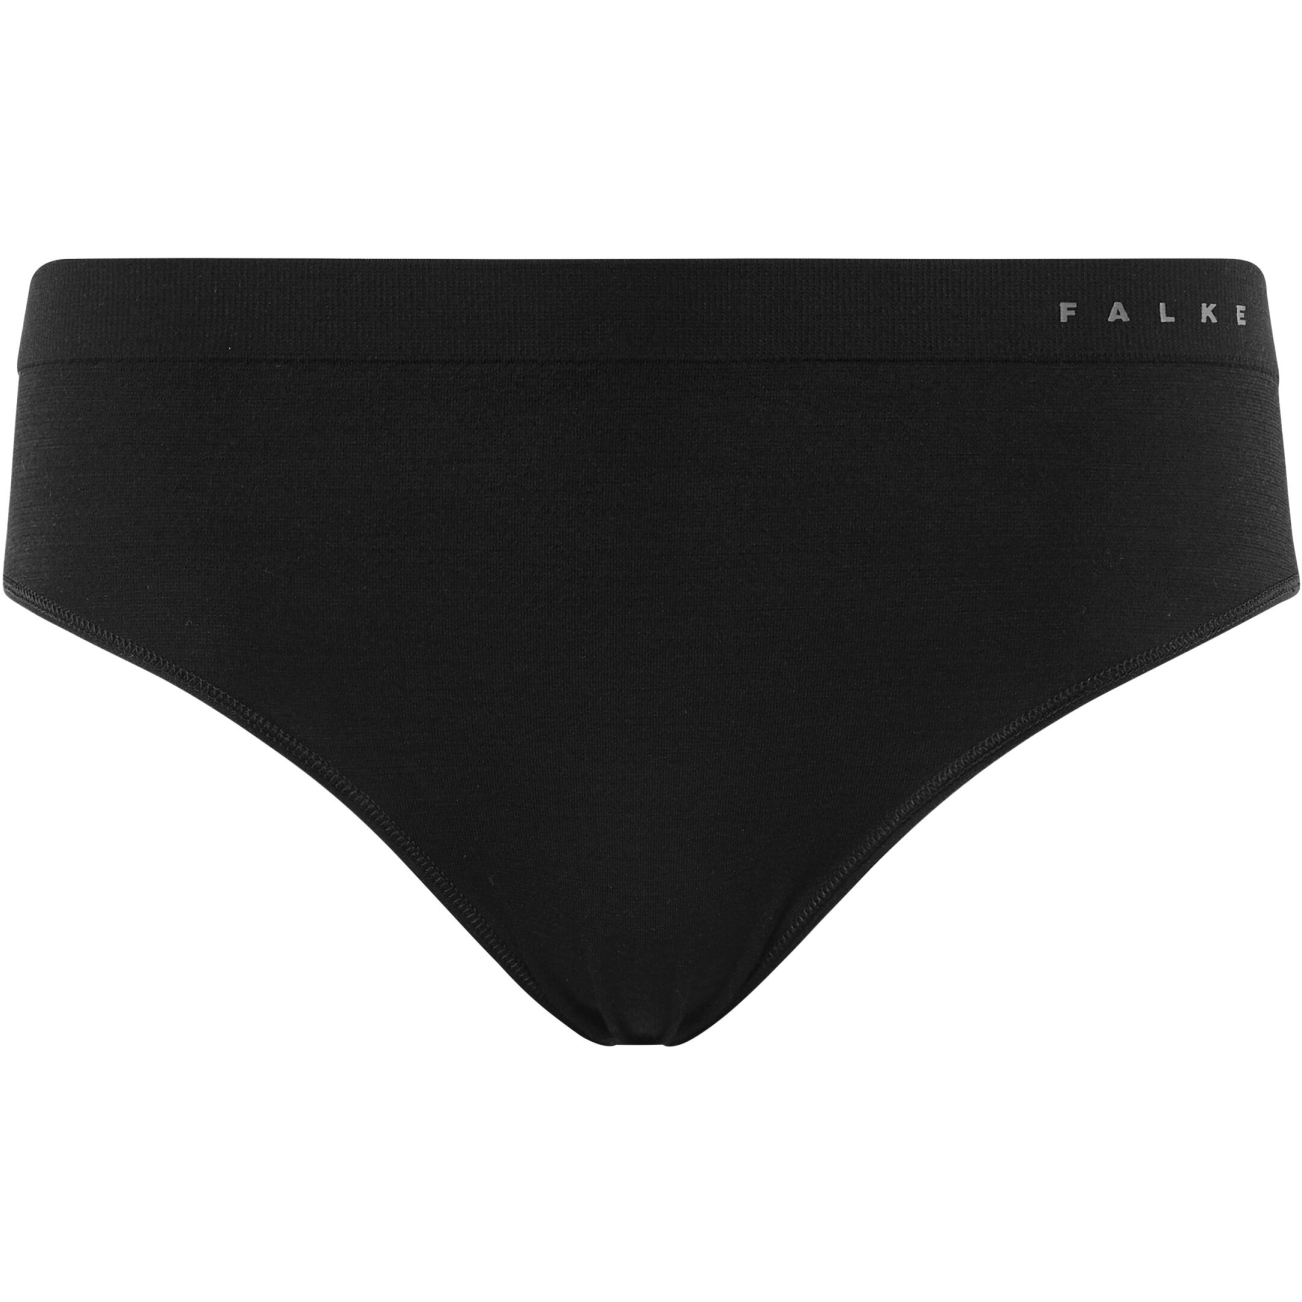 Falke Wool-Tech Light Panties Women - black 3000 (33462)